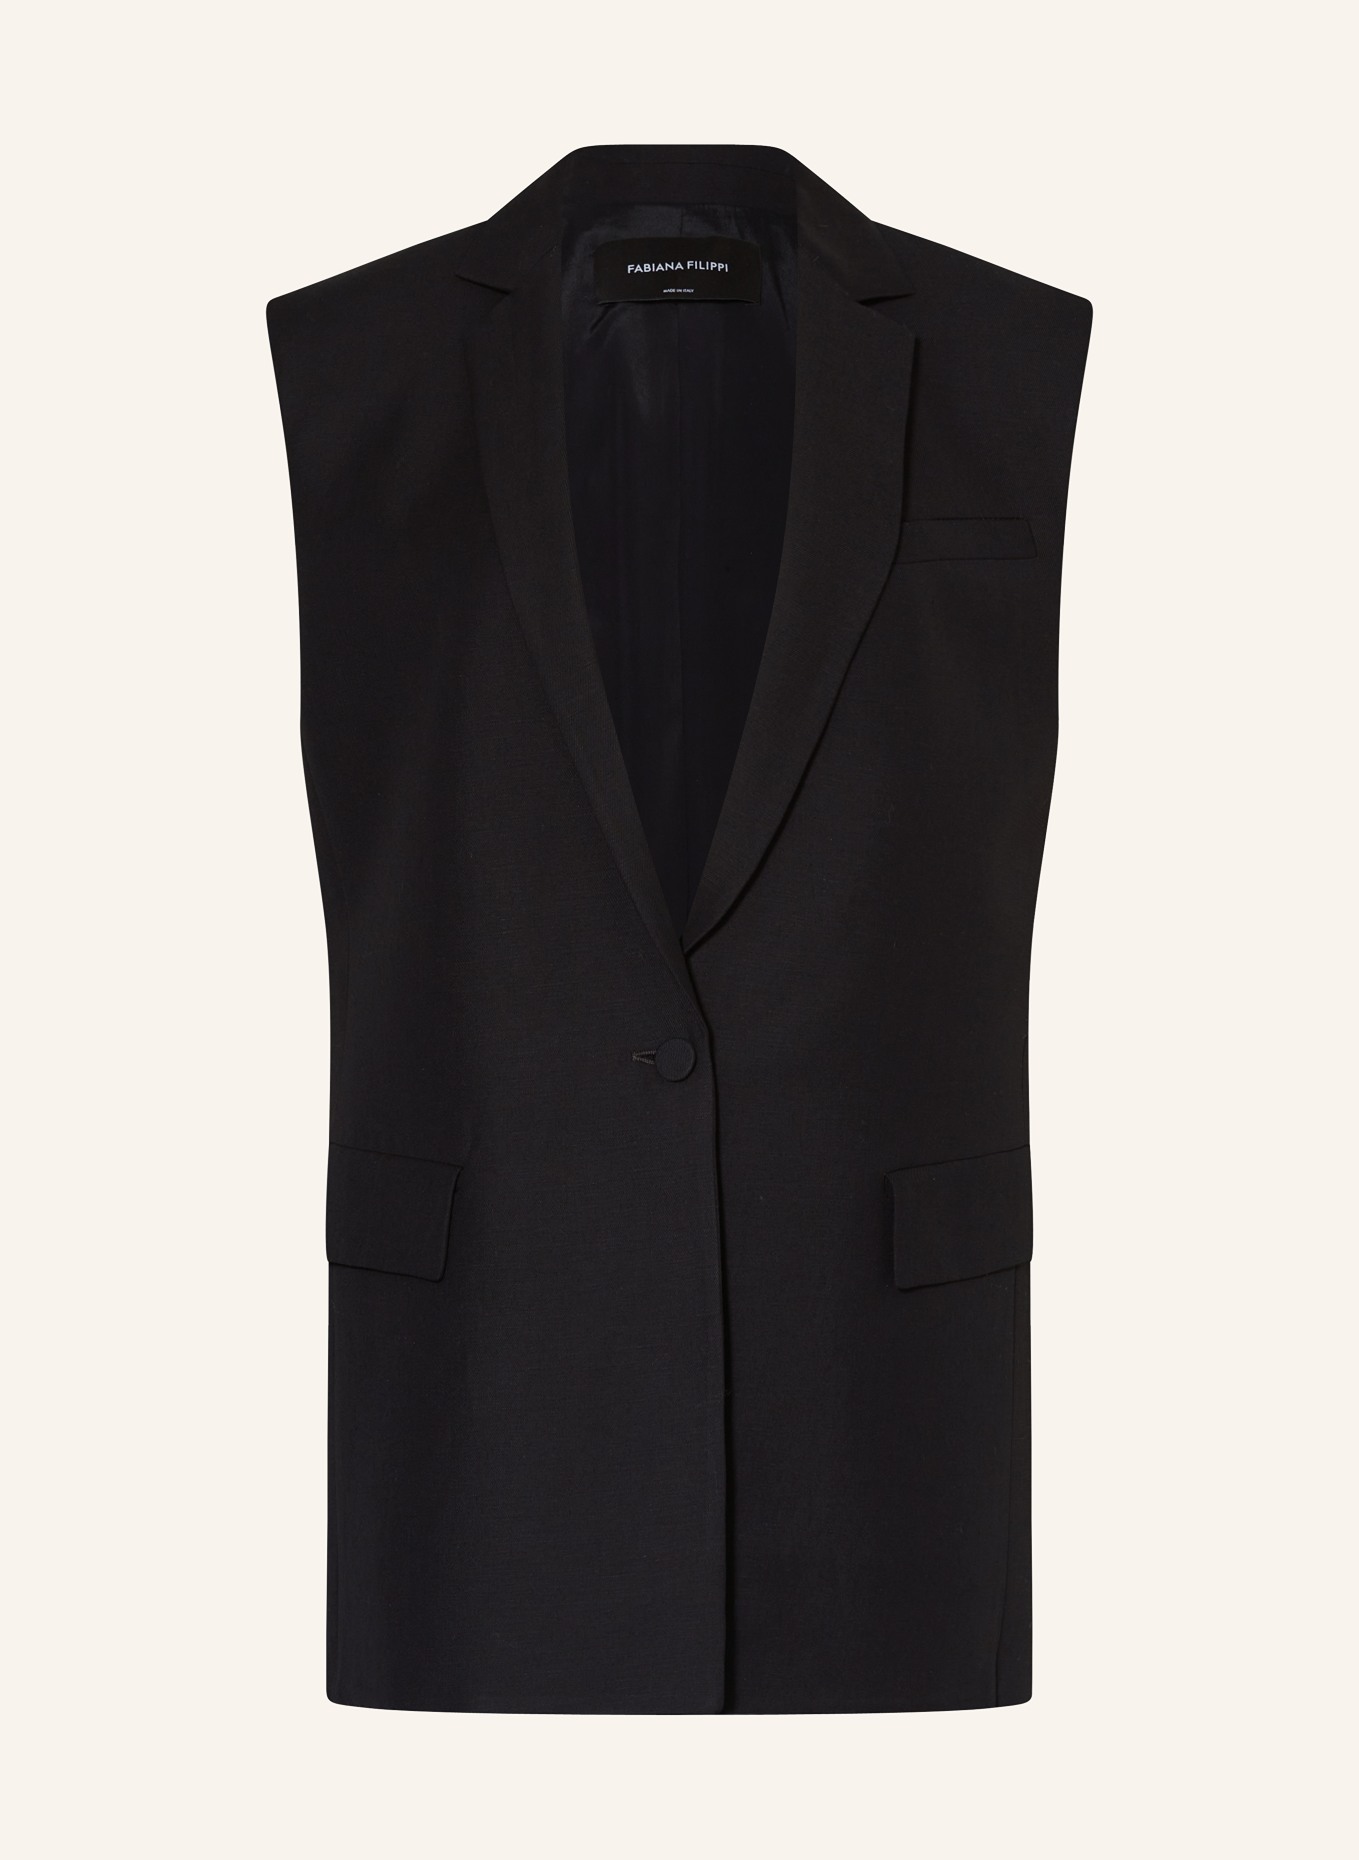 FABIANA FILIPPI Waistcoat with linen, Color: BLACK (Image 1)